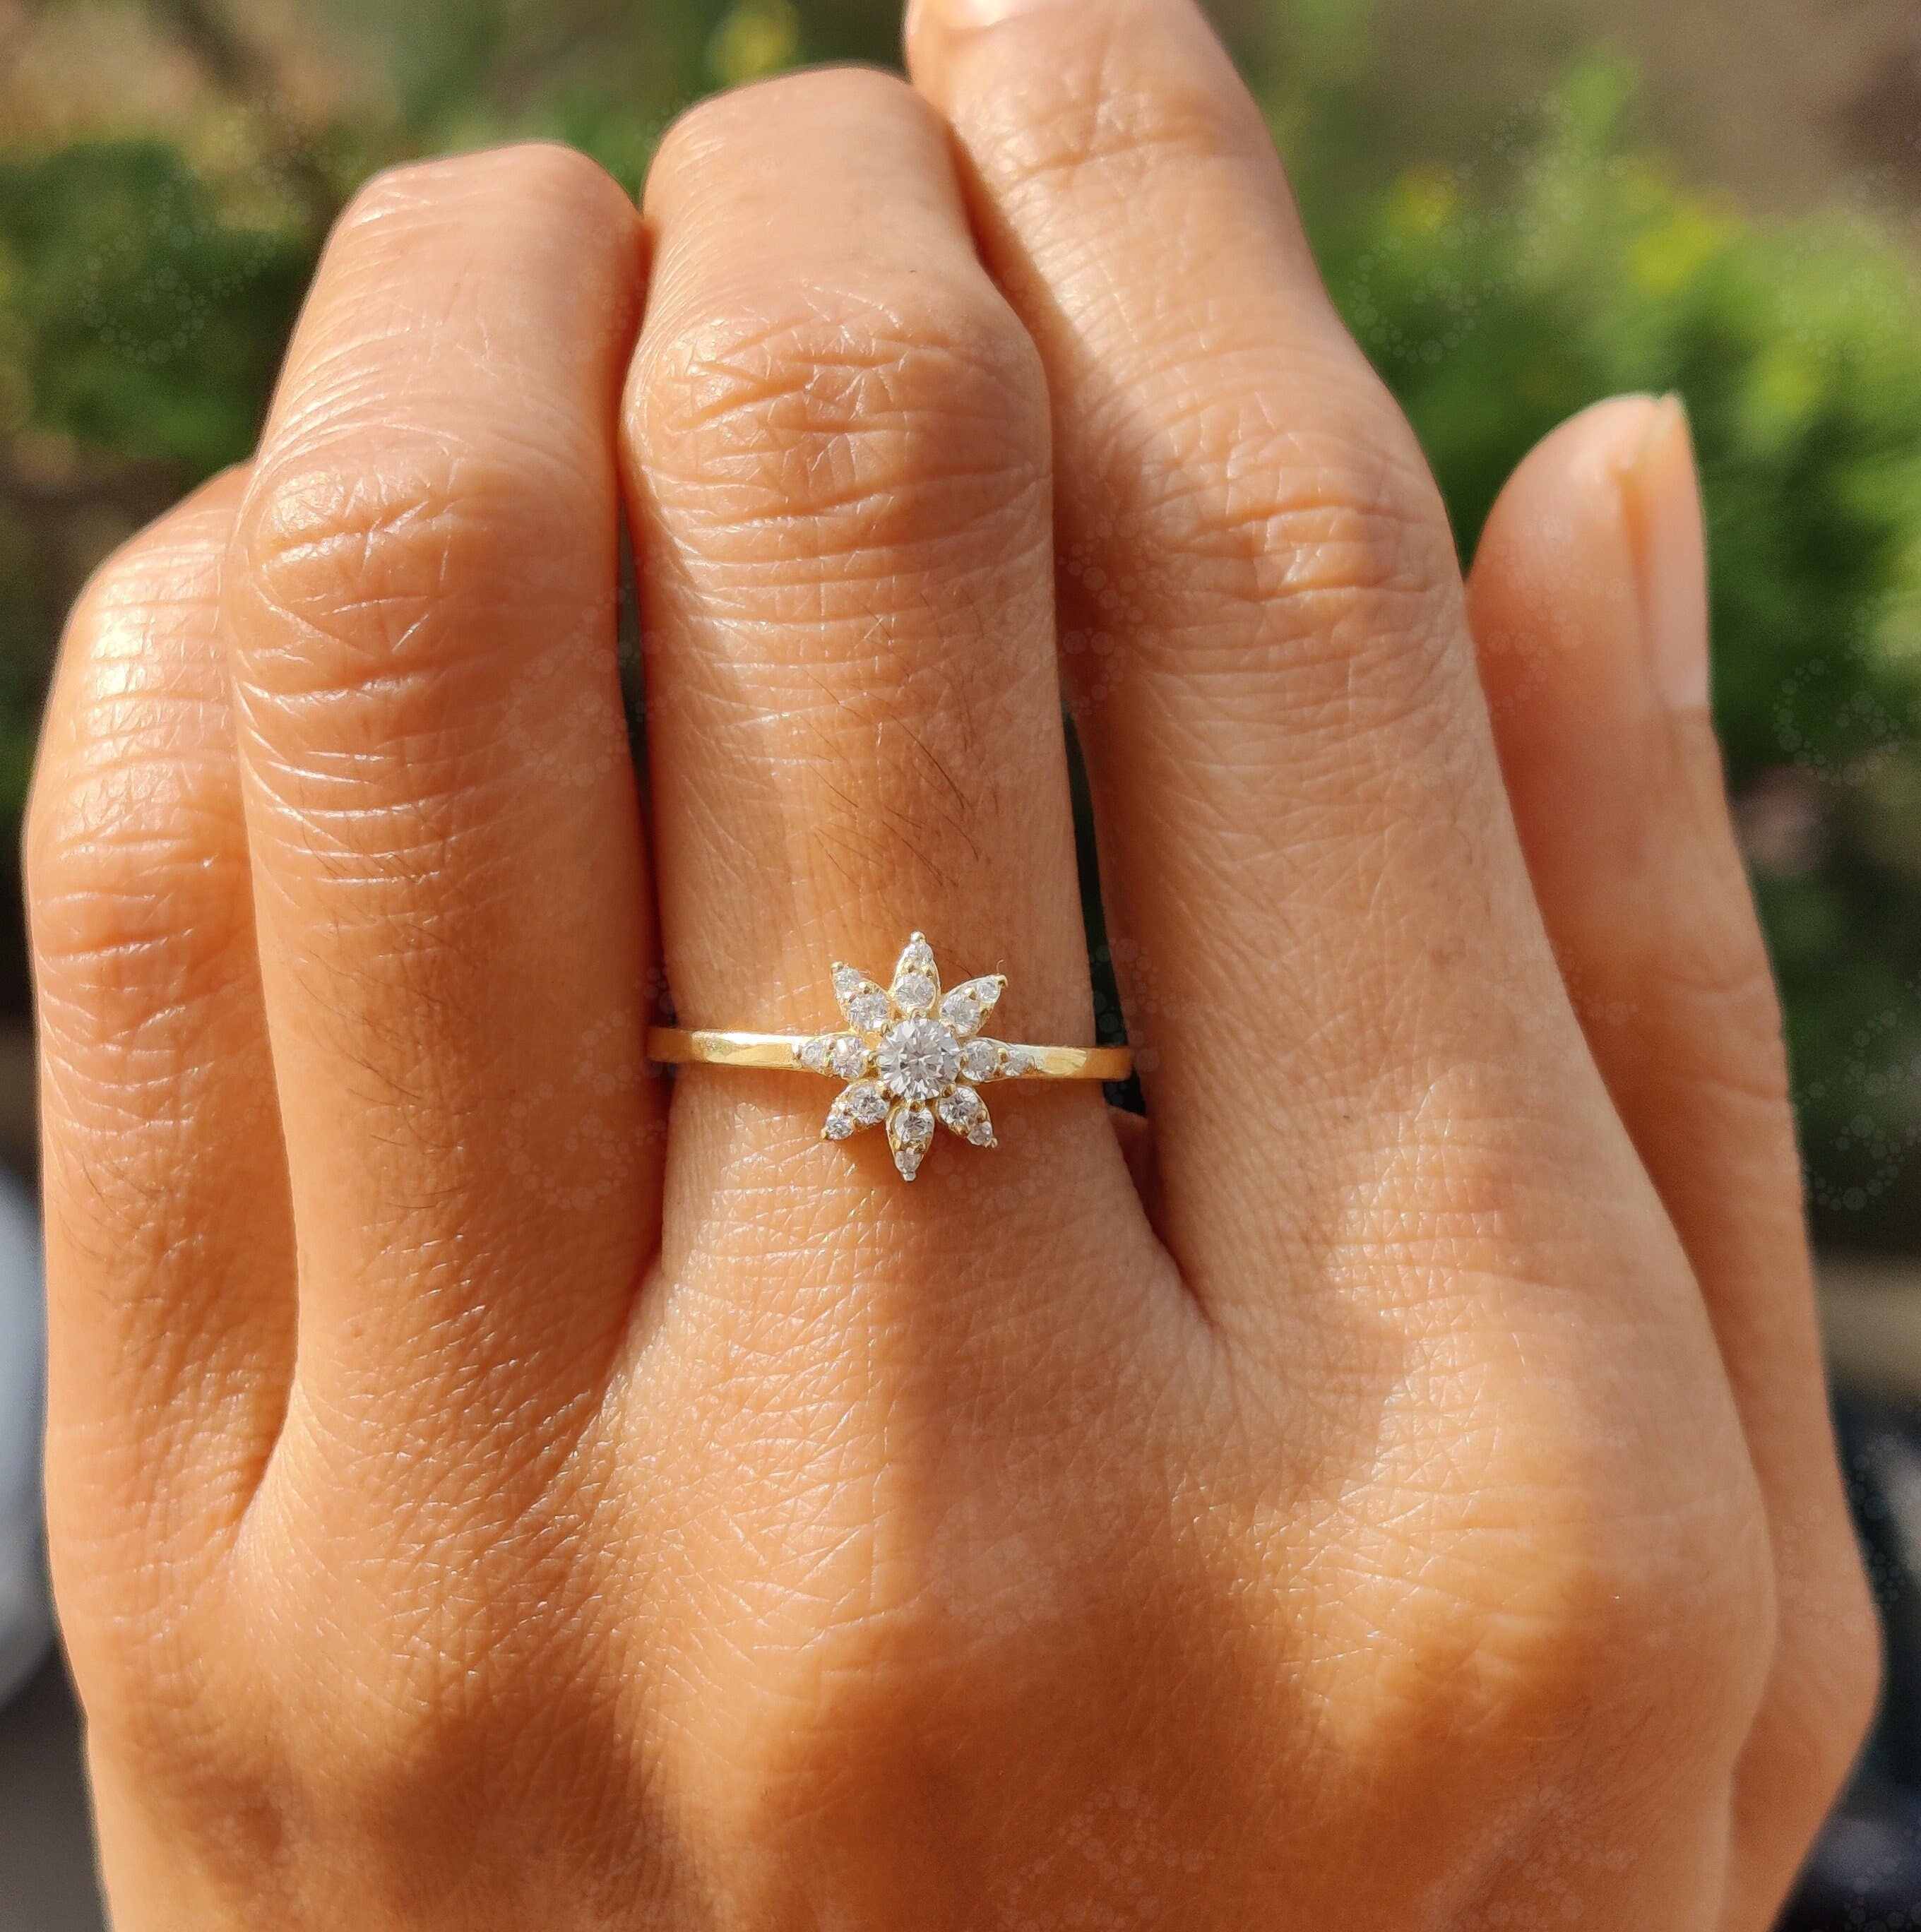 Radiant Sunburst Moissanite Ring in 14k Gold - Nature-Inspired Women's Wedding Band, Promise, and Anniversary Ring